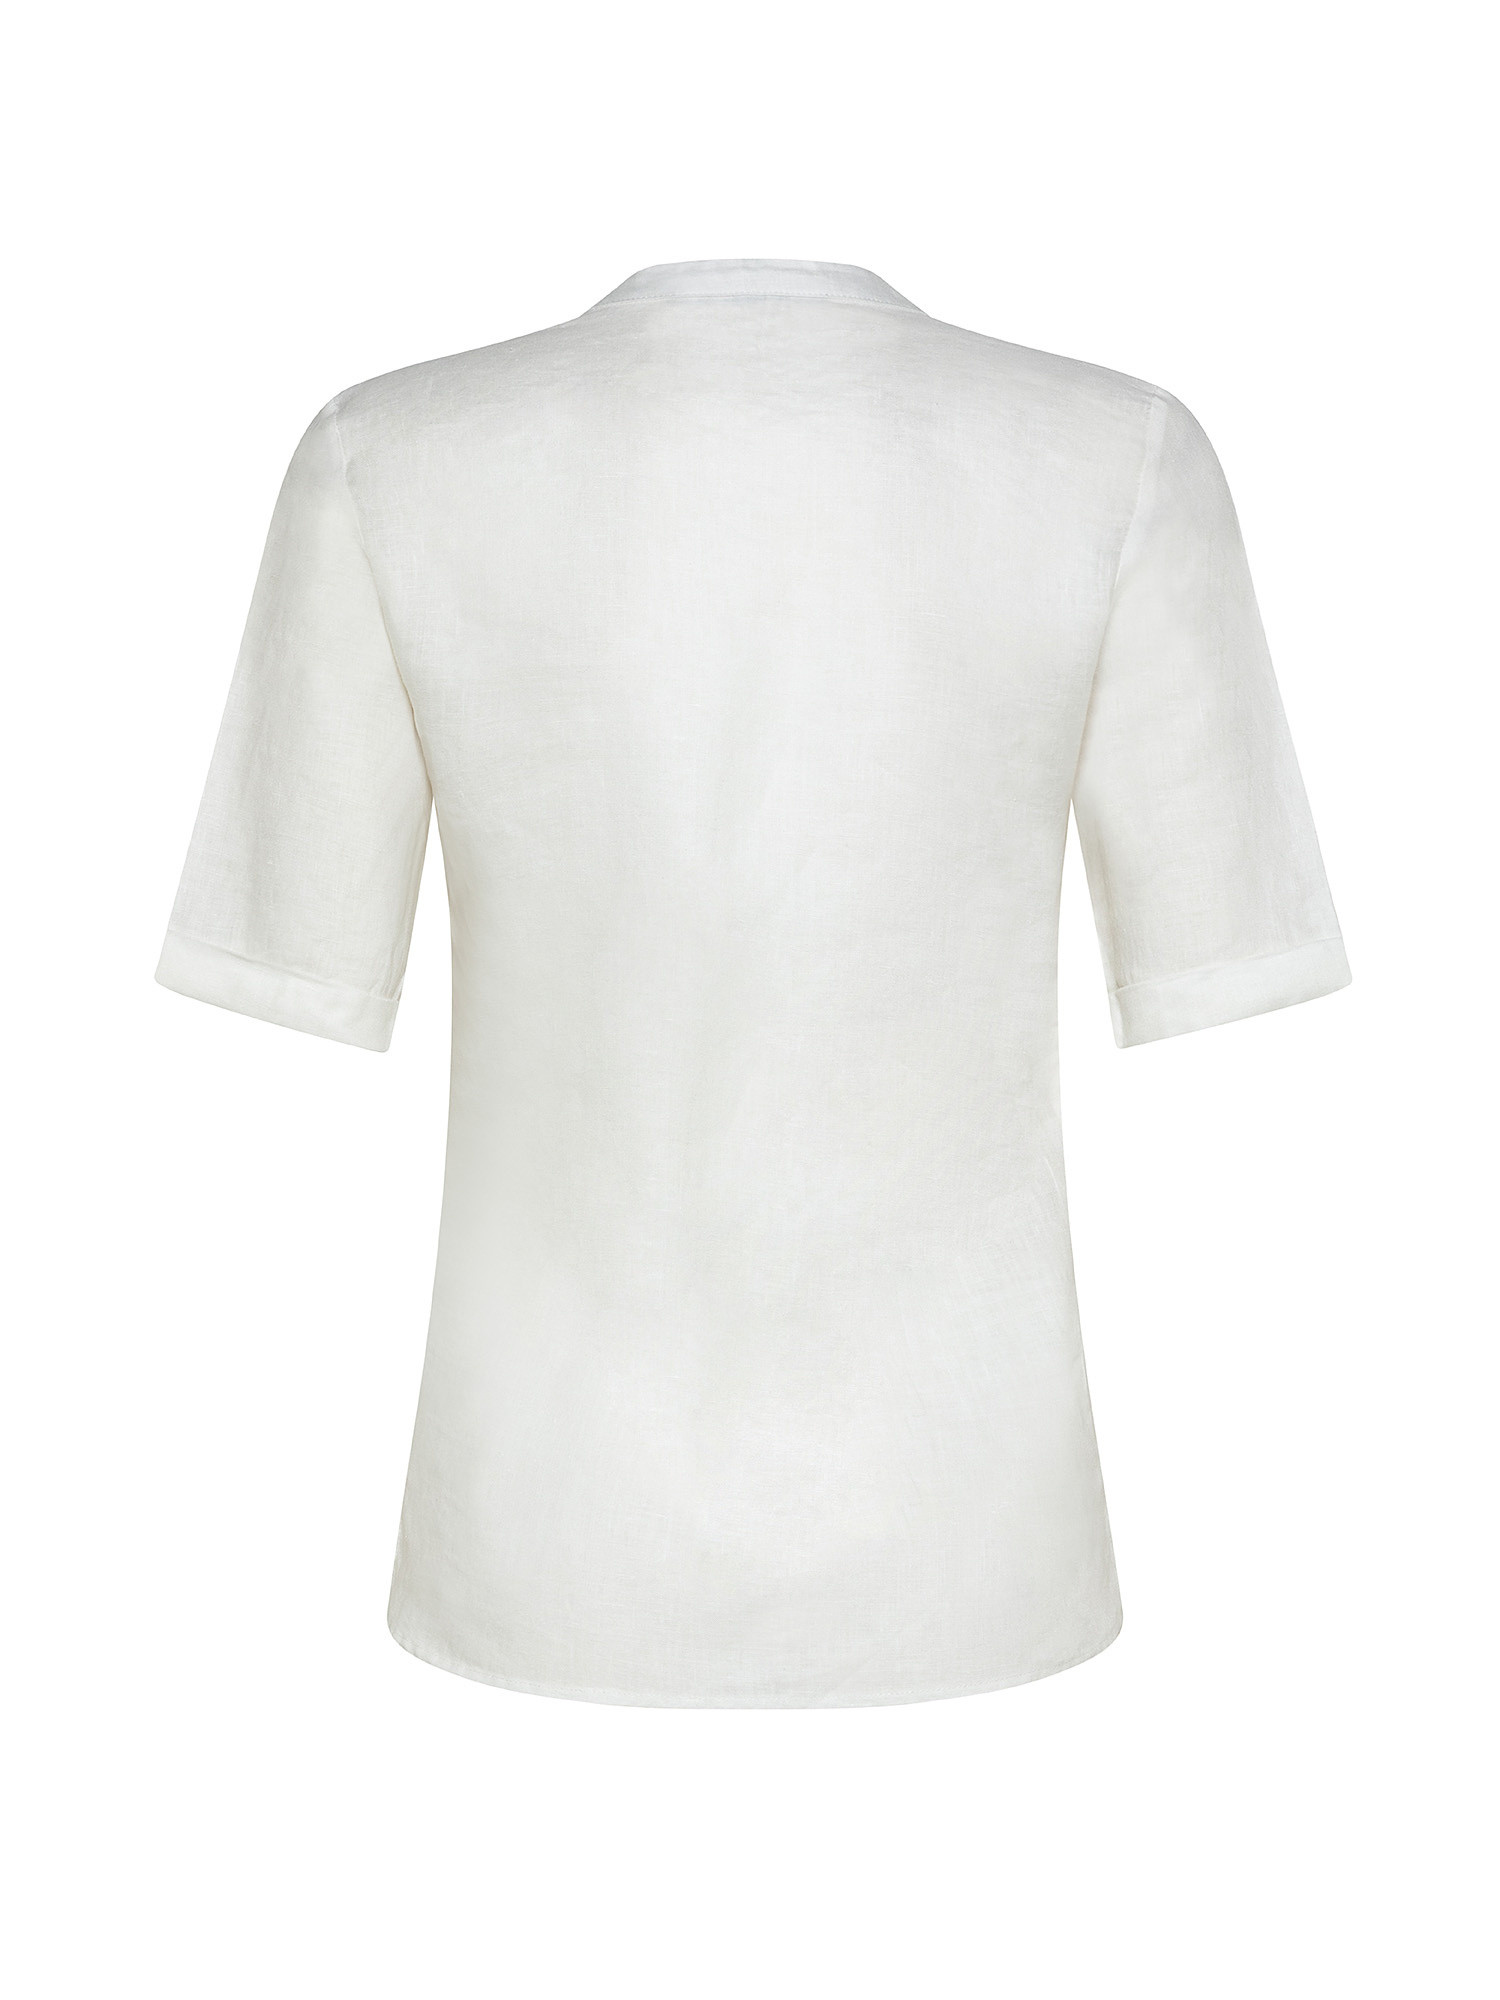 Camicia puro lino con pieghine, Bianco, large image number 1